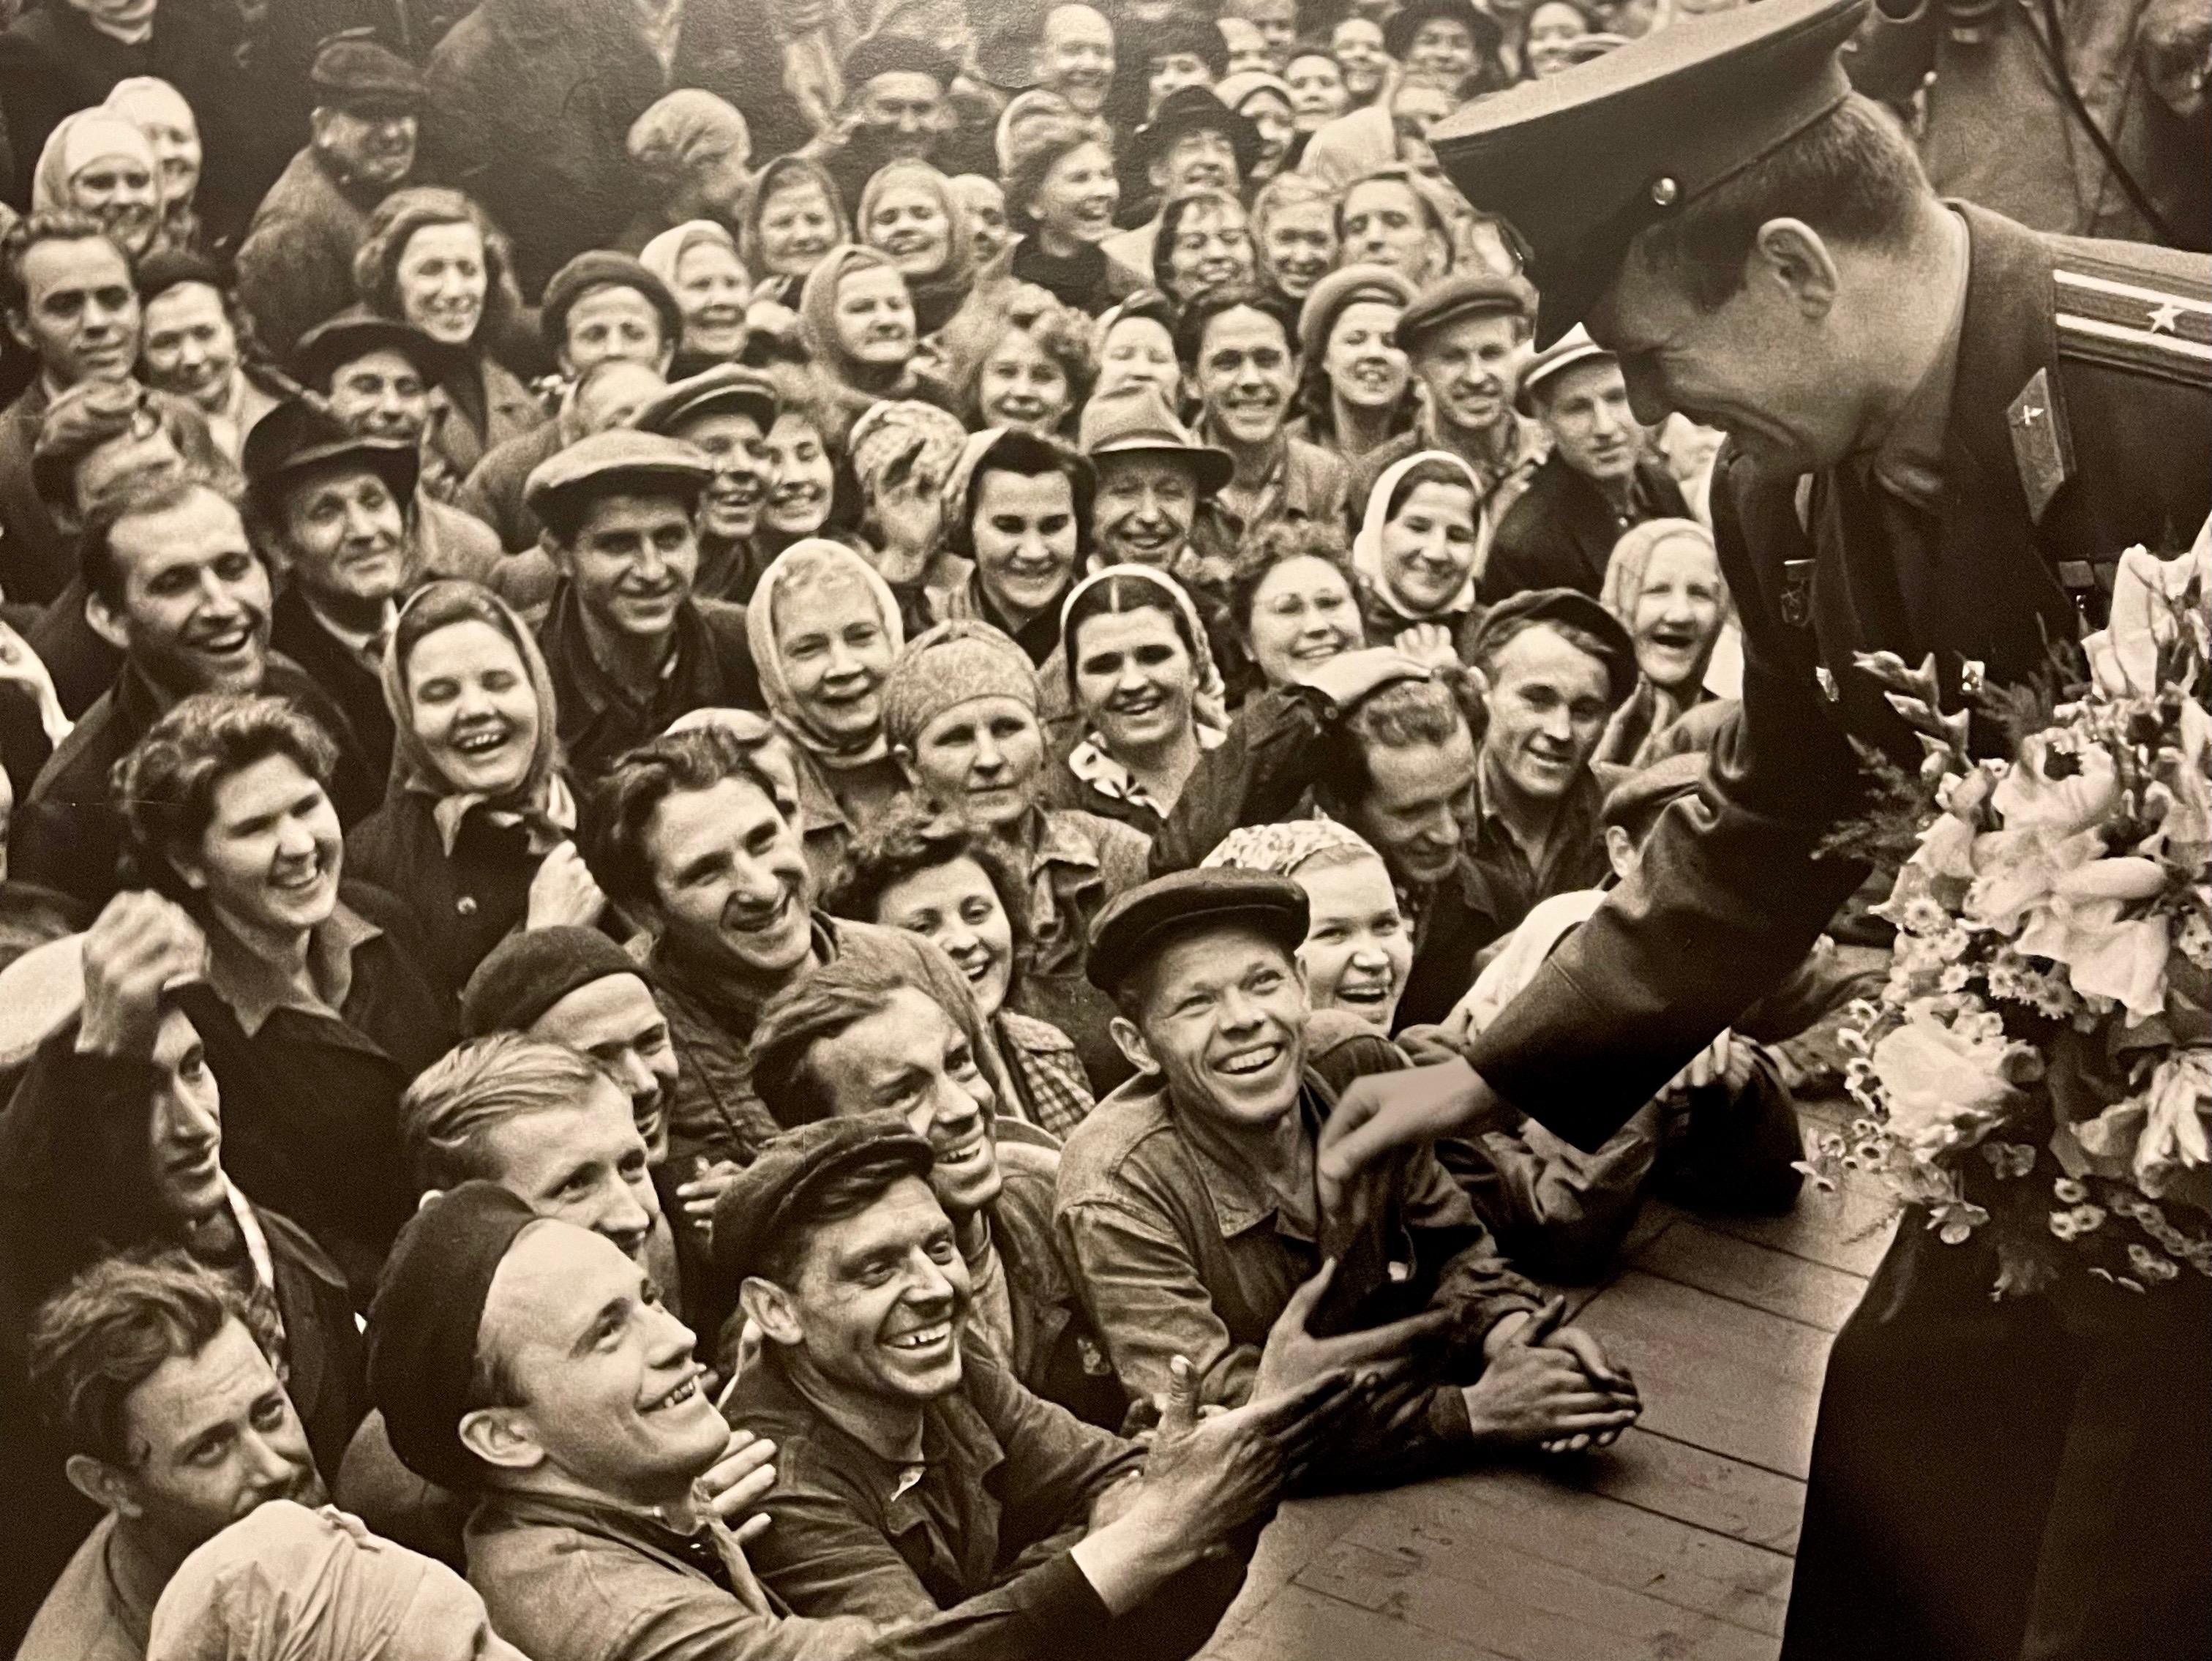 Juri Gagarin trifft Arbeiter in der Gießerei Stankolit, Darstellung des berühmten russischen Kosmonauten (Moskau, 1961)
Gelatinesilberdruck, mattiert, Druckdatum unbekannt.
Provenienz: erworben aus dem Nachlass des Fotografen Samariy Gurariy.